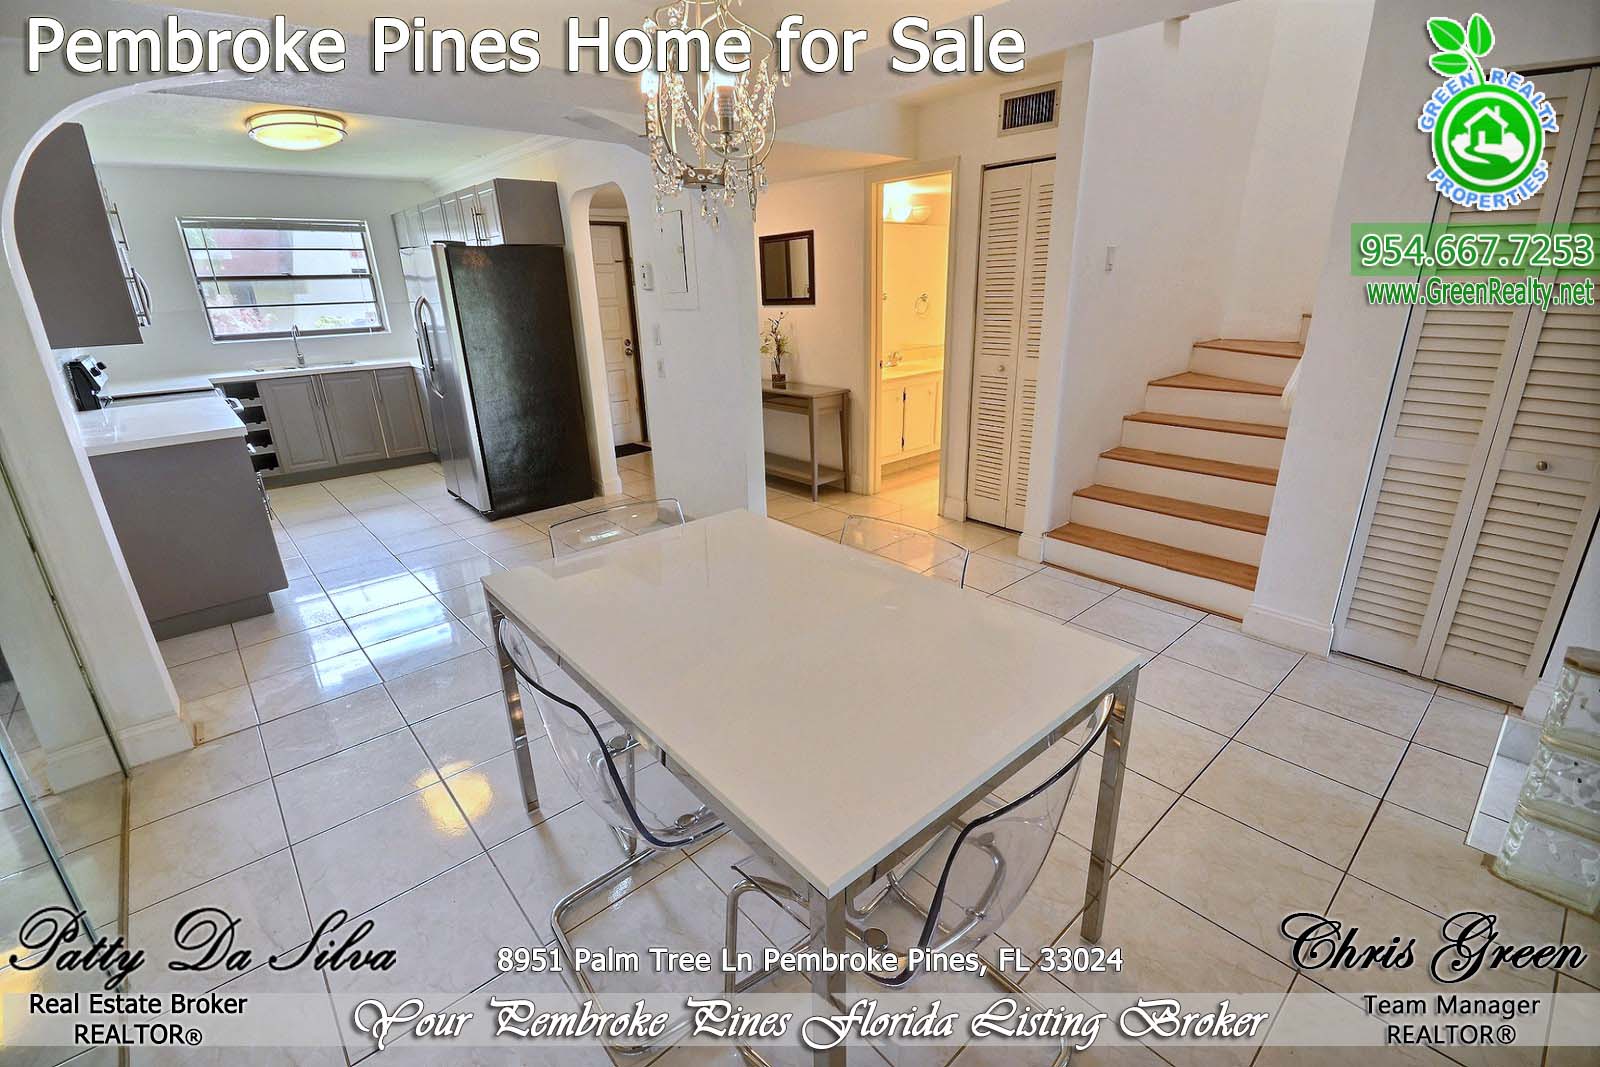 Pembroke Pines Homes For Sale - 8951 Palm Tree Lane (11)